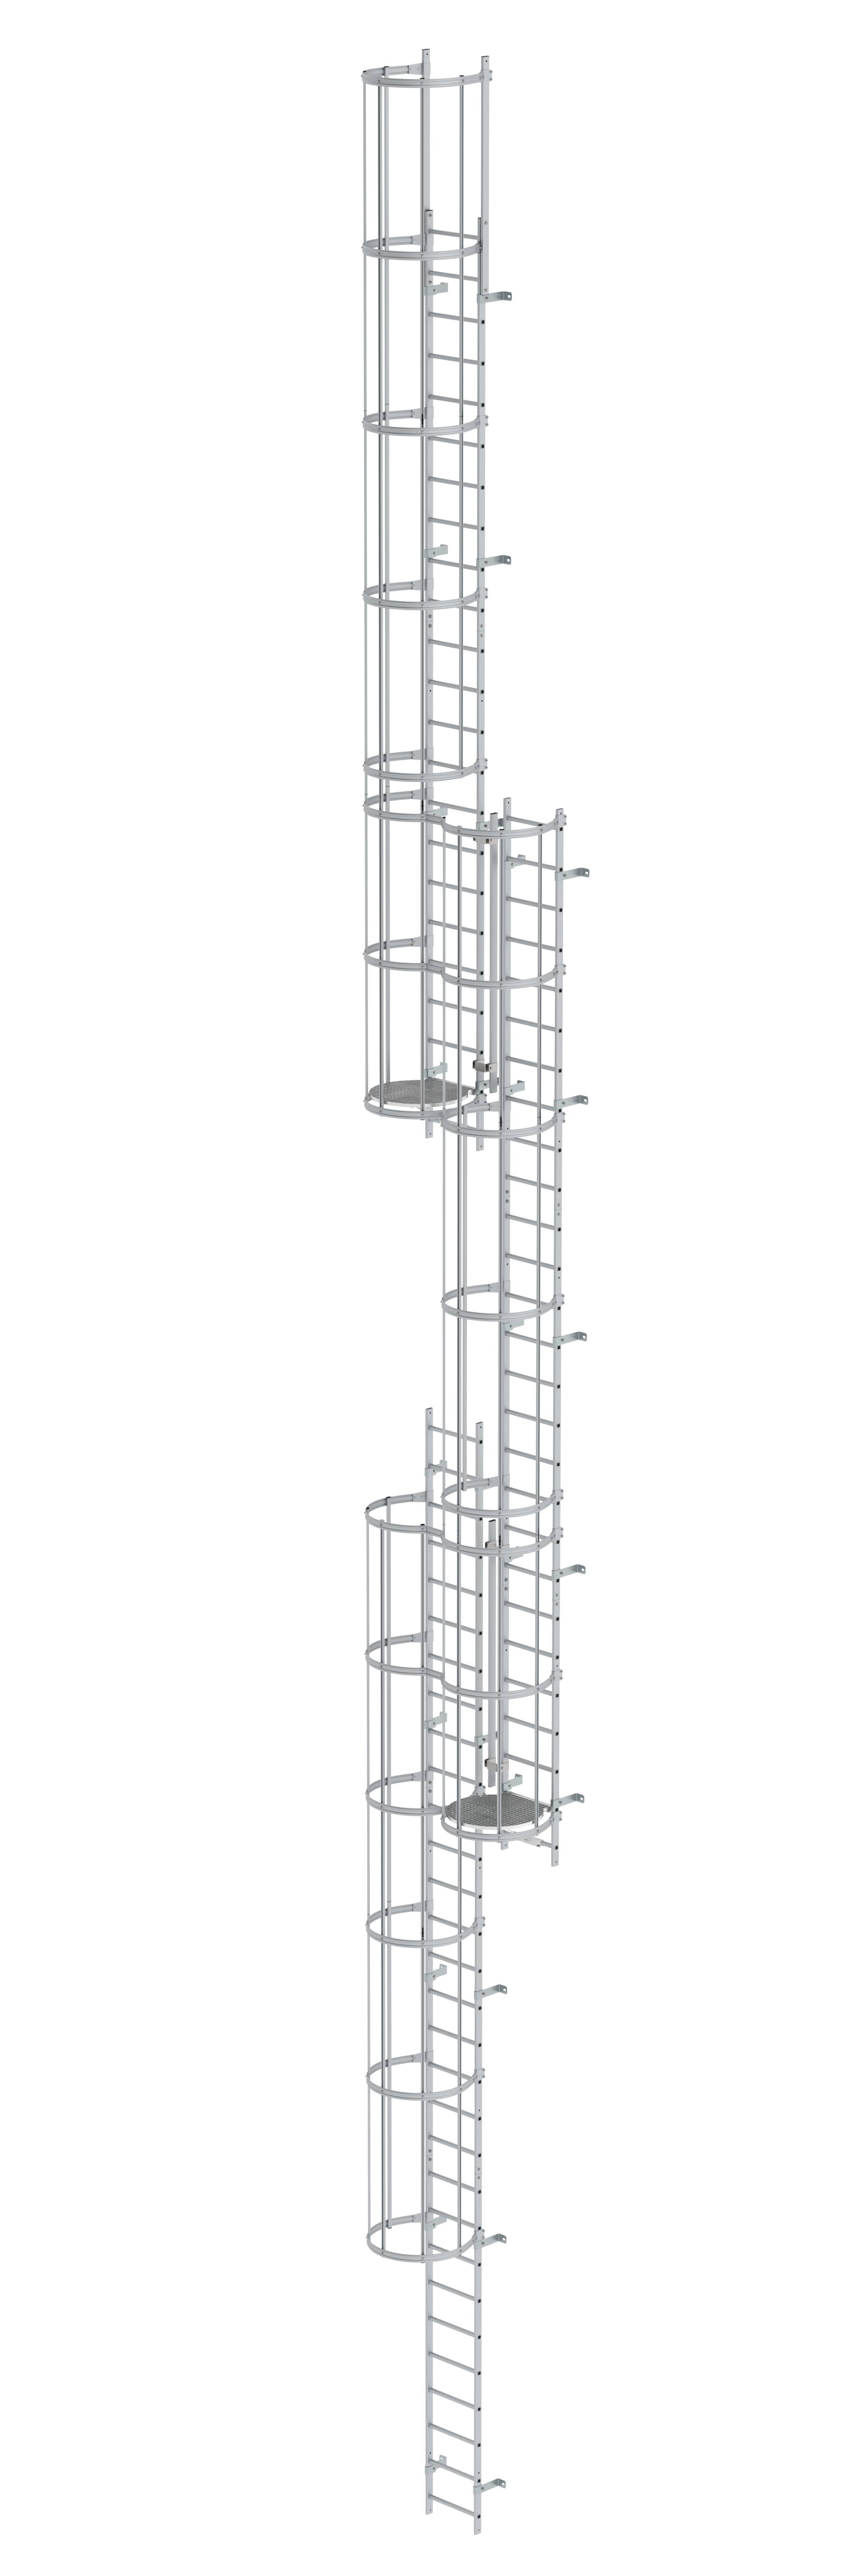 MUNK Mehrzügige Steigleiter mit Rückenschutz (Maschinen) Aluminium blank  